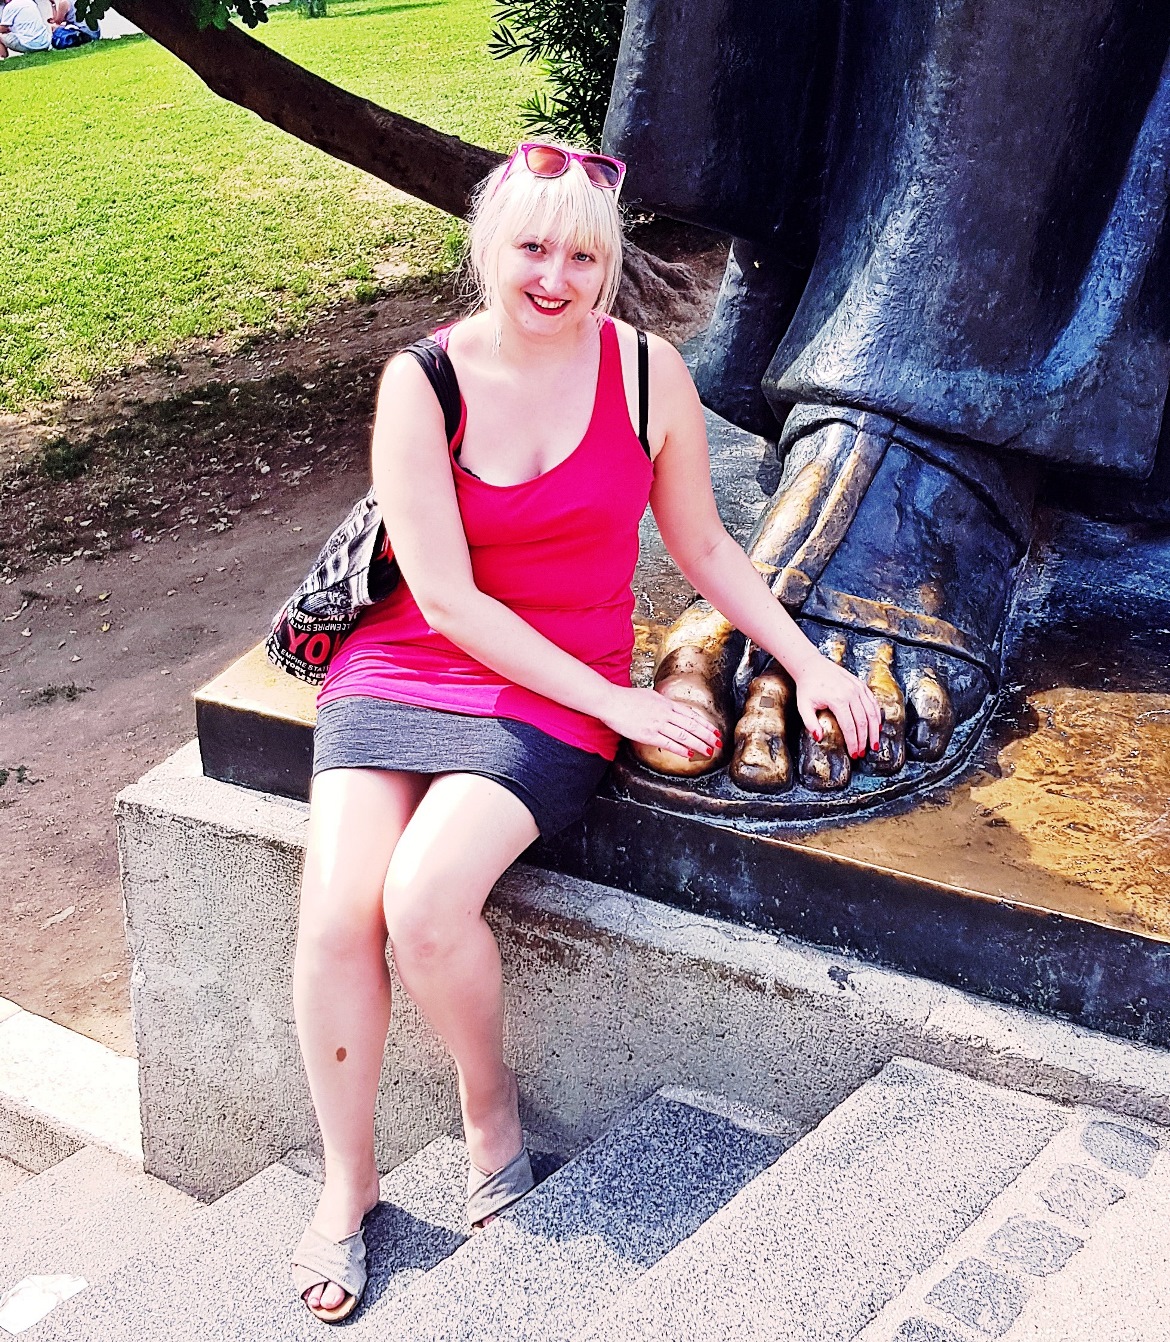 Rubbing Grgur of Nin's toe in Split - Croatia in Photographs by BeckyBecky Blogs